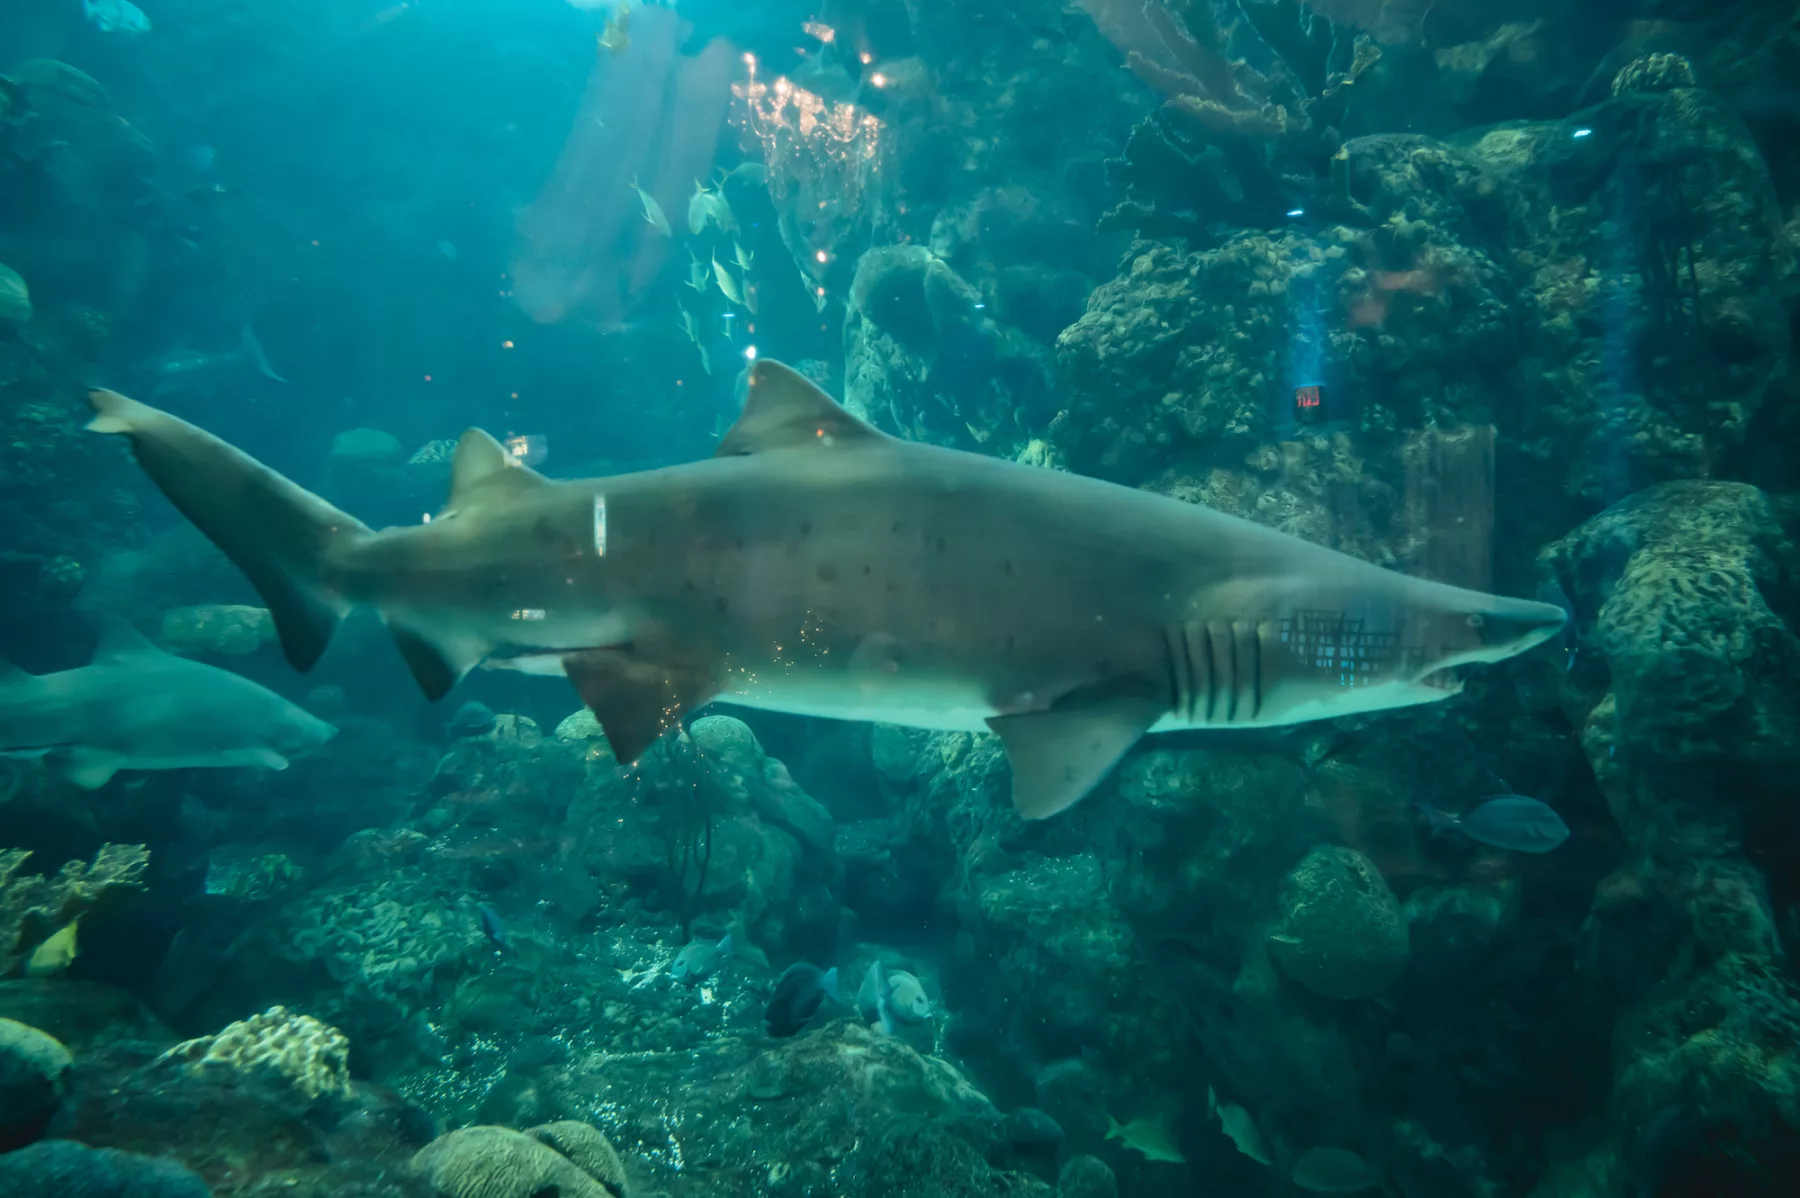 Coral Reef Gallery Shark Tank Wedding Ceremony Ideas | Venue The Florida Aquarium